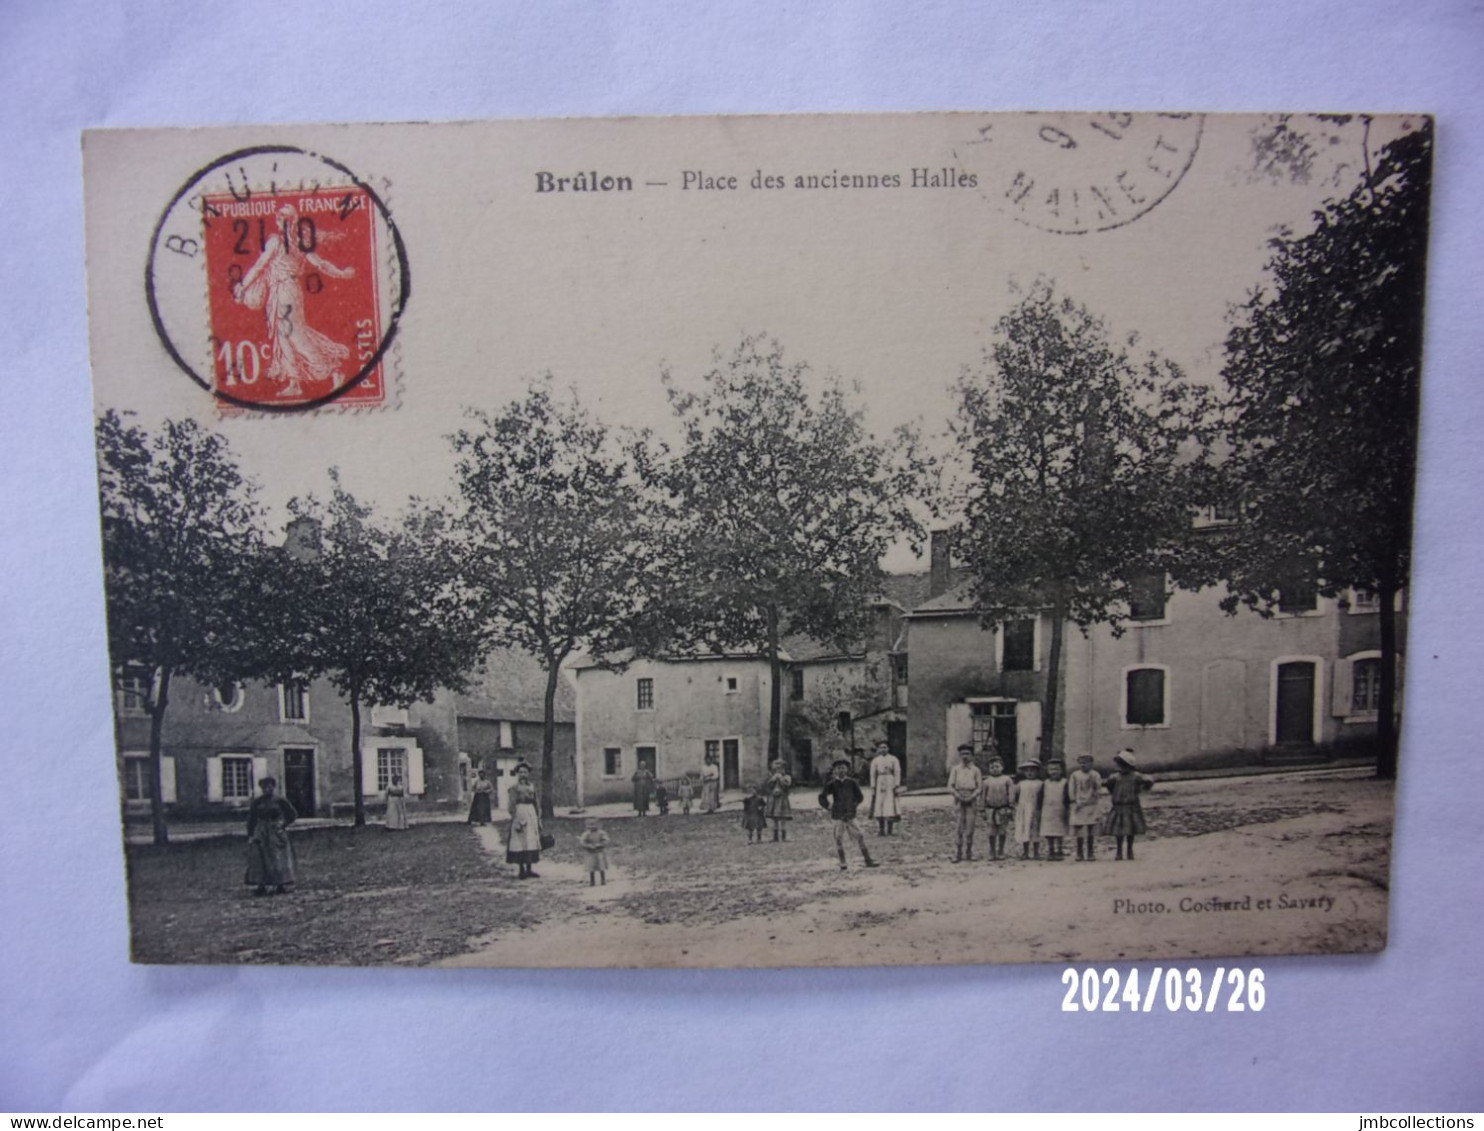 BRULON (Sarthe) PLACE DES ANCIENNES HALLES - Brulon